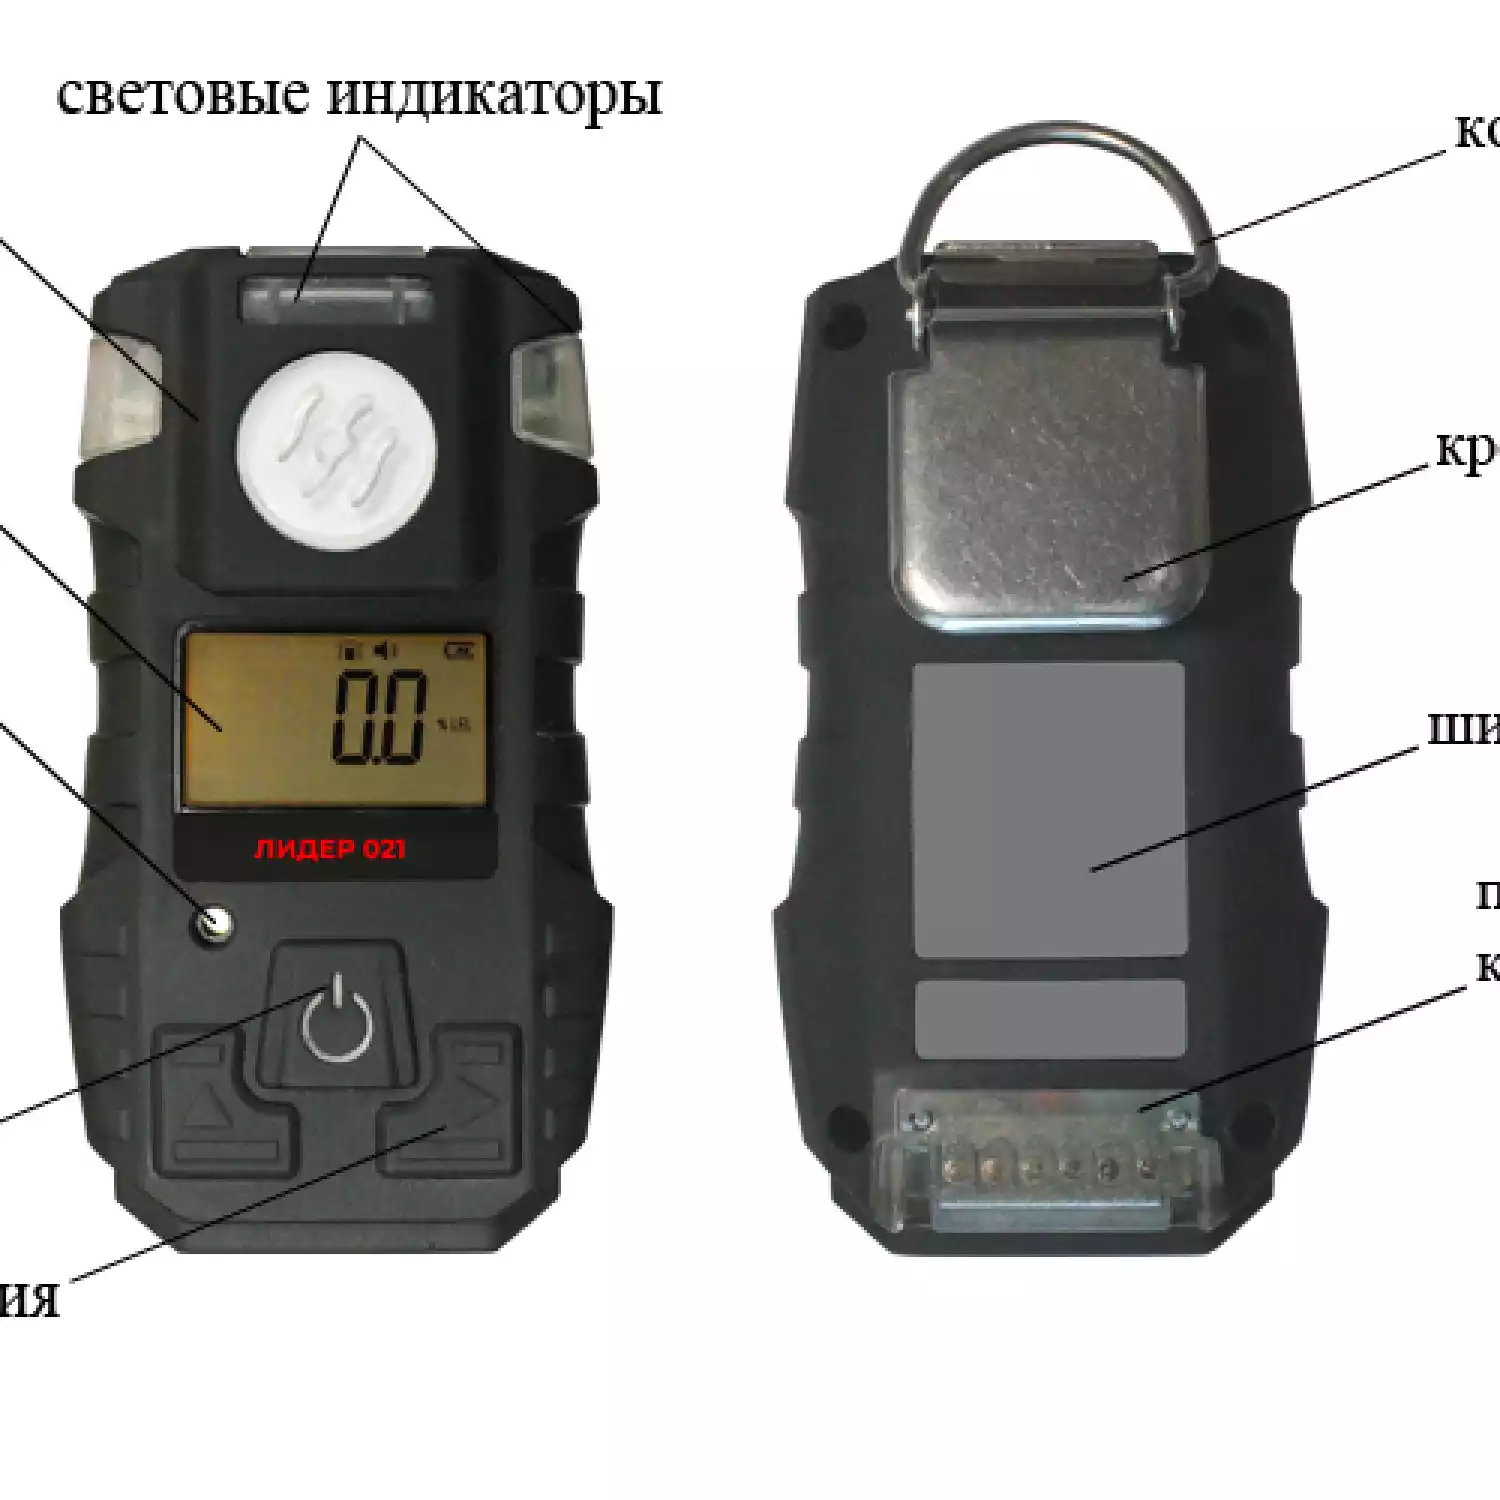 Газоанализатор портативный ЛИДЕР 021 (NO2) - 4